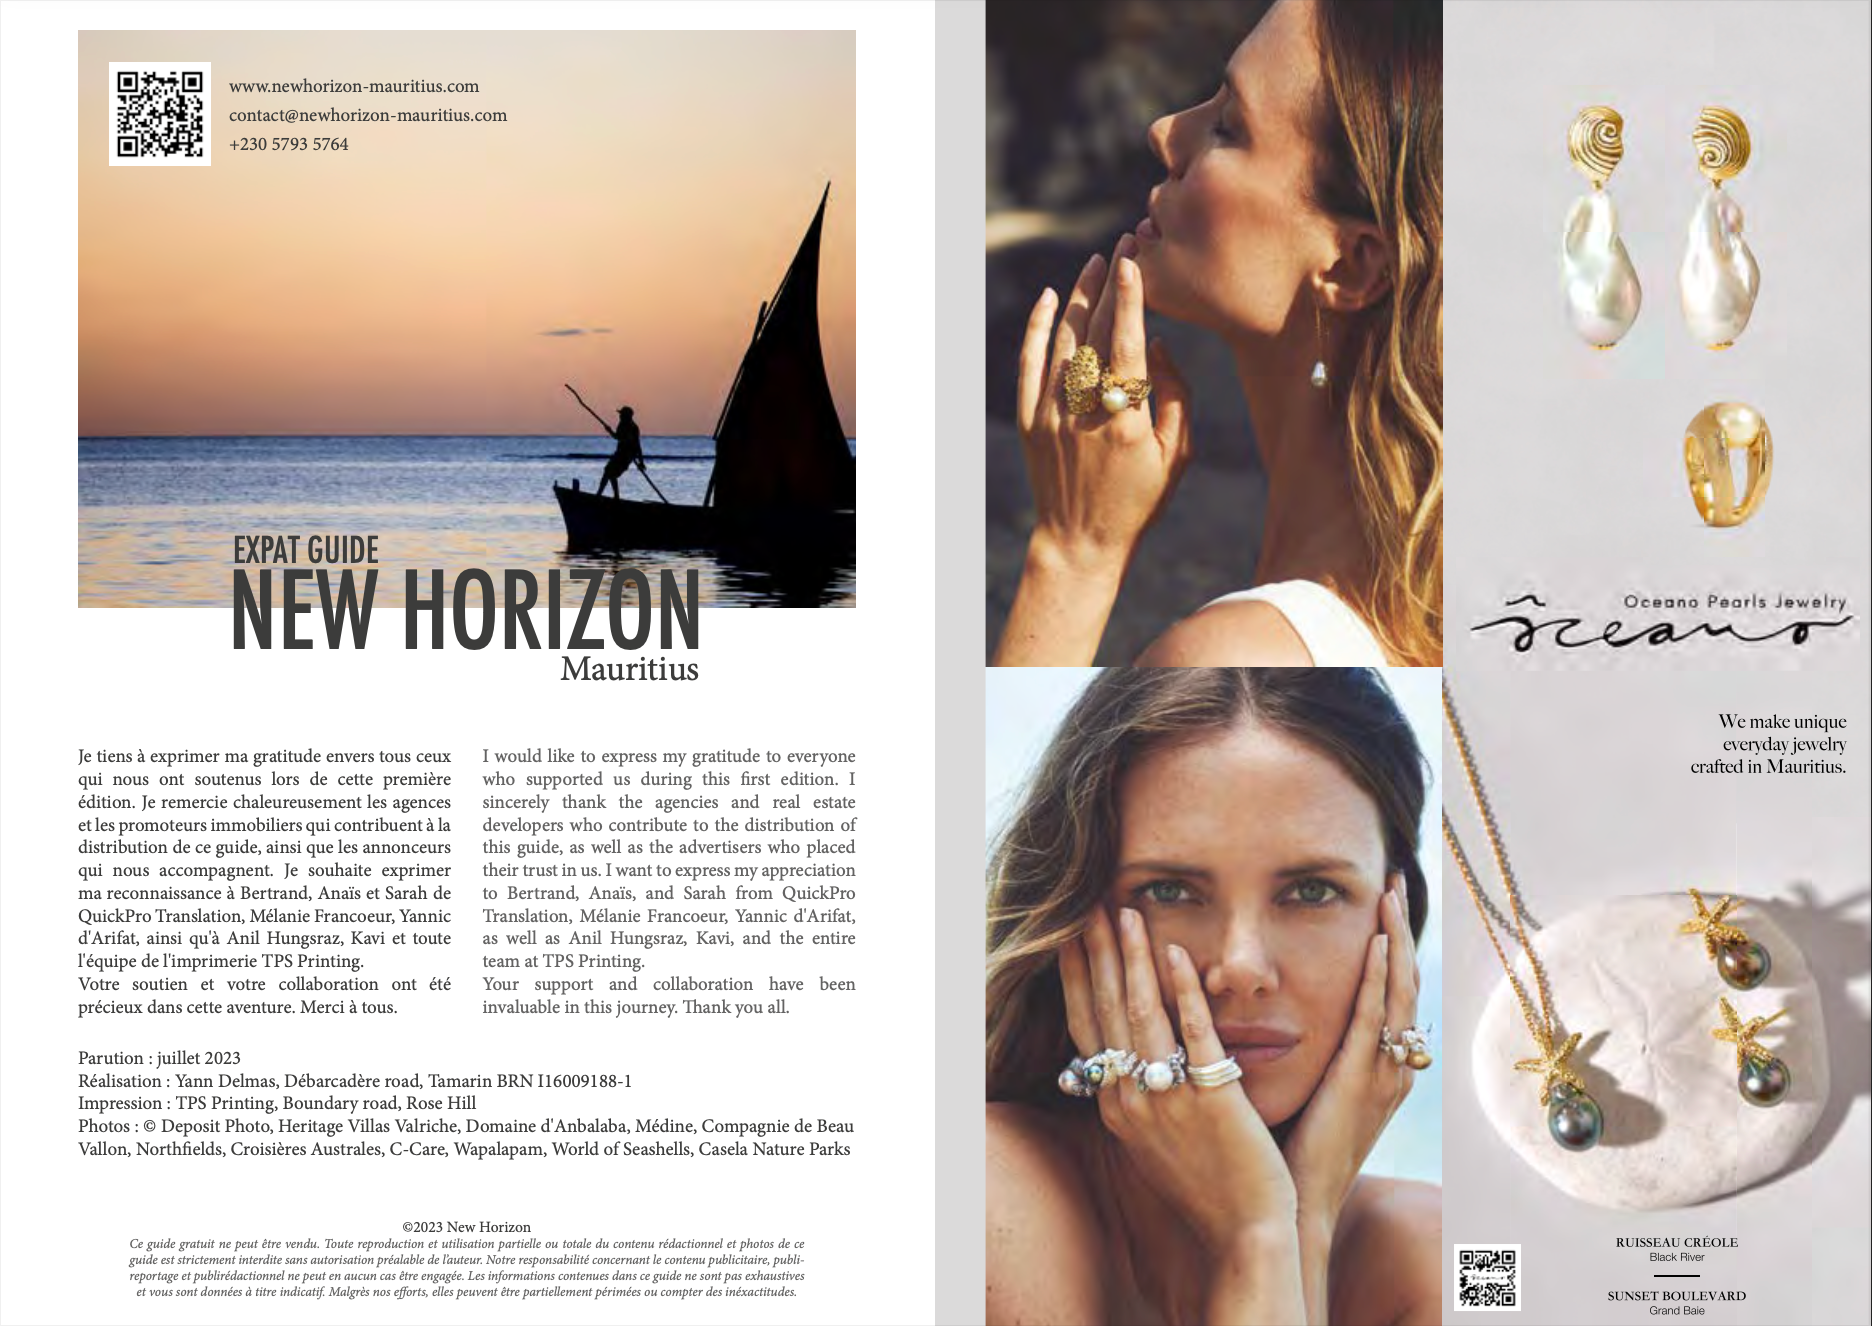 Oceano Pearls in New Horizon Expat Guide - Oceano Pearls